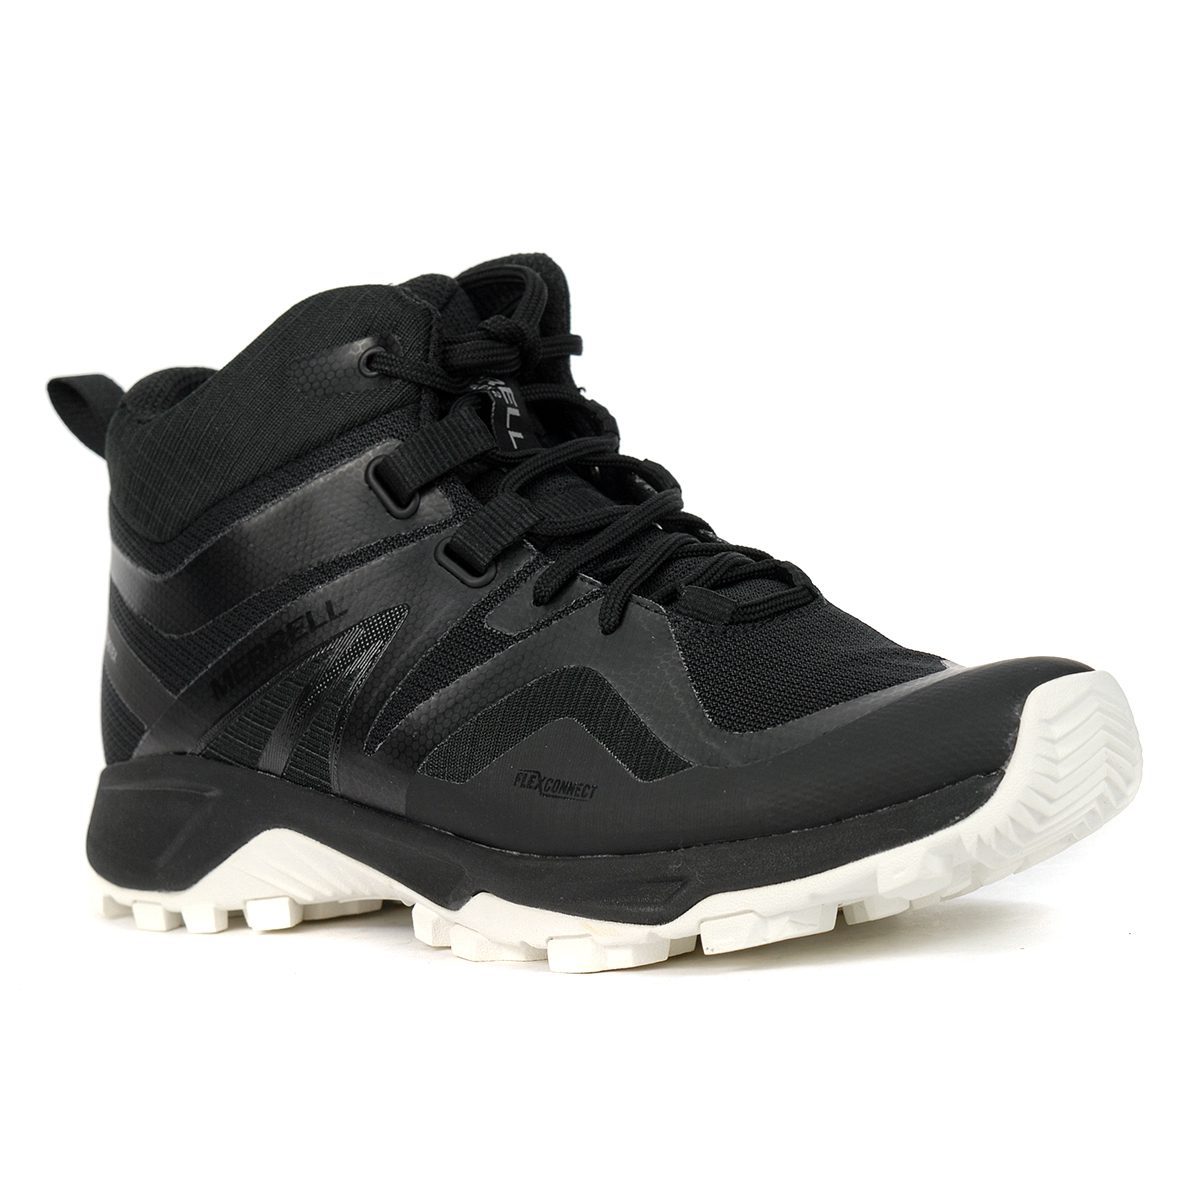 Merrell Men's MQM Flex 2 GTX Black/White Mid Trail Shoes J034223 ...